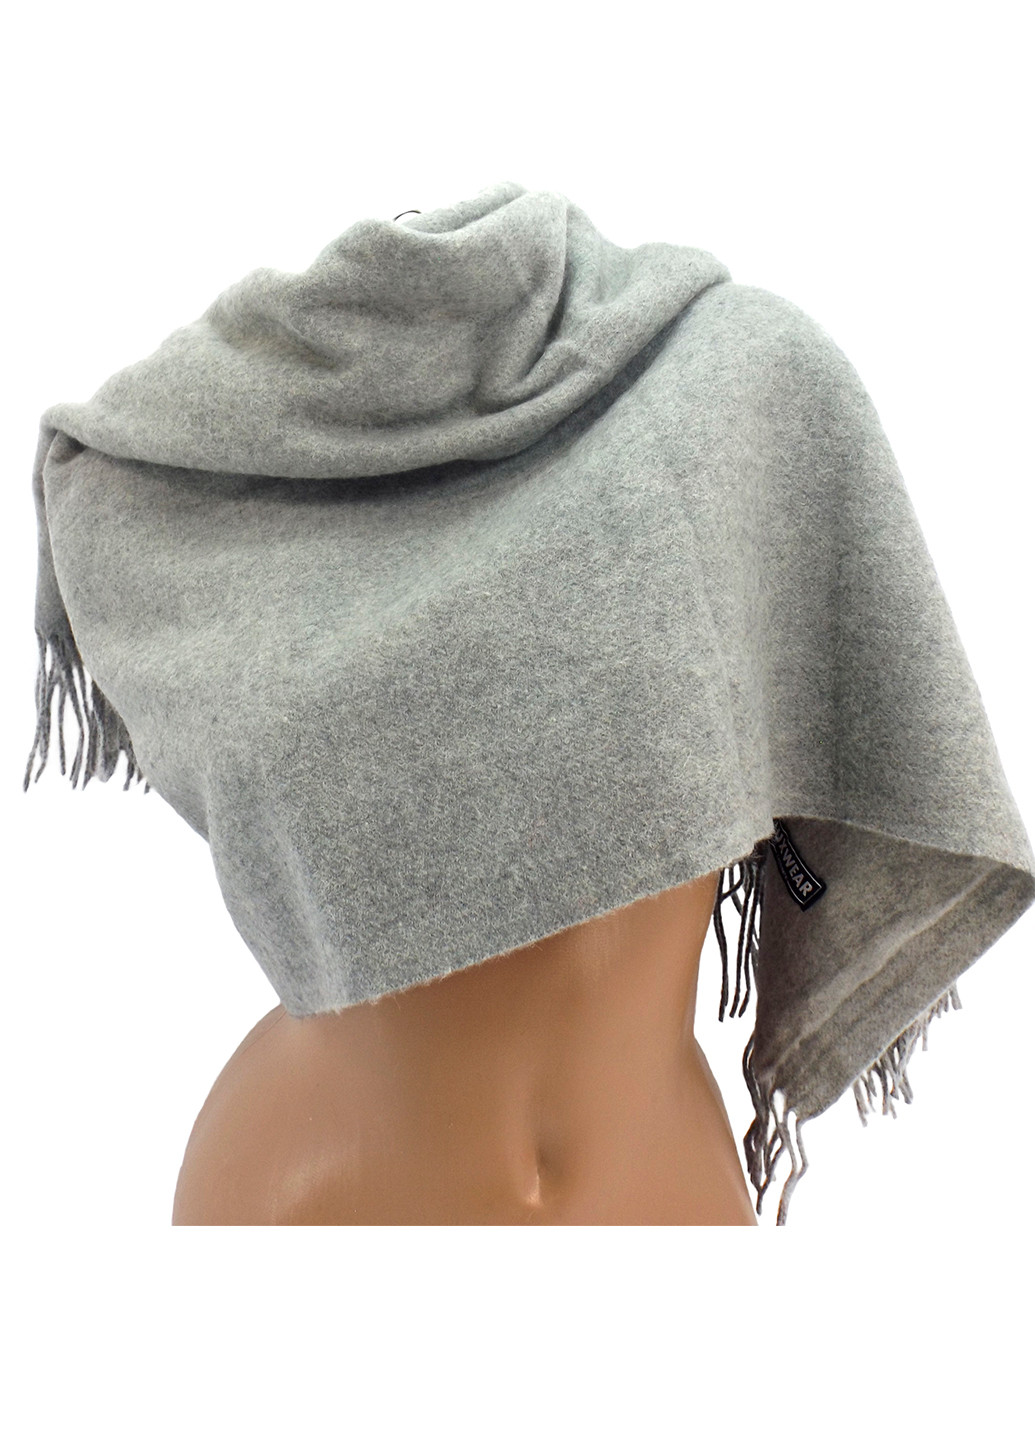 Женский кашемировый шарф Светло-серый LuxWear s128004 (225001112)